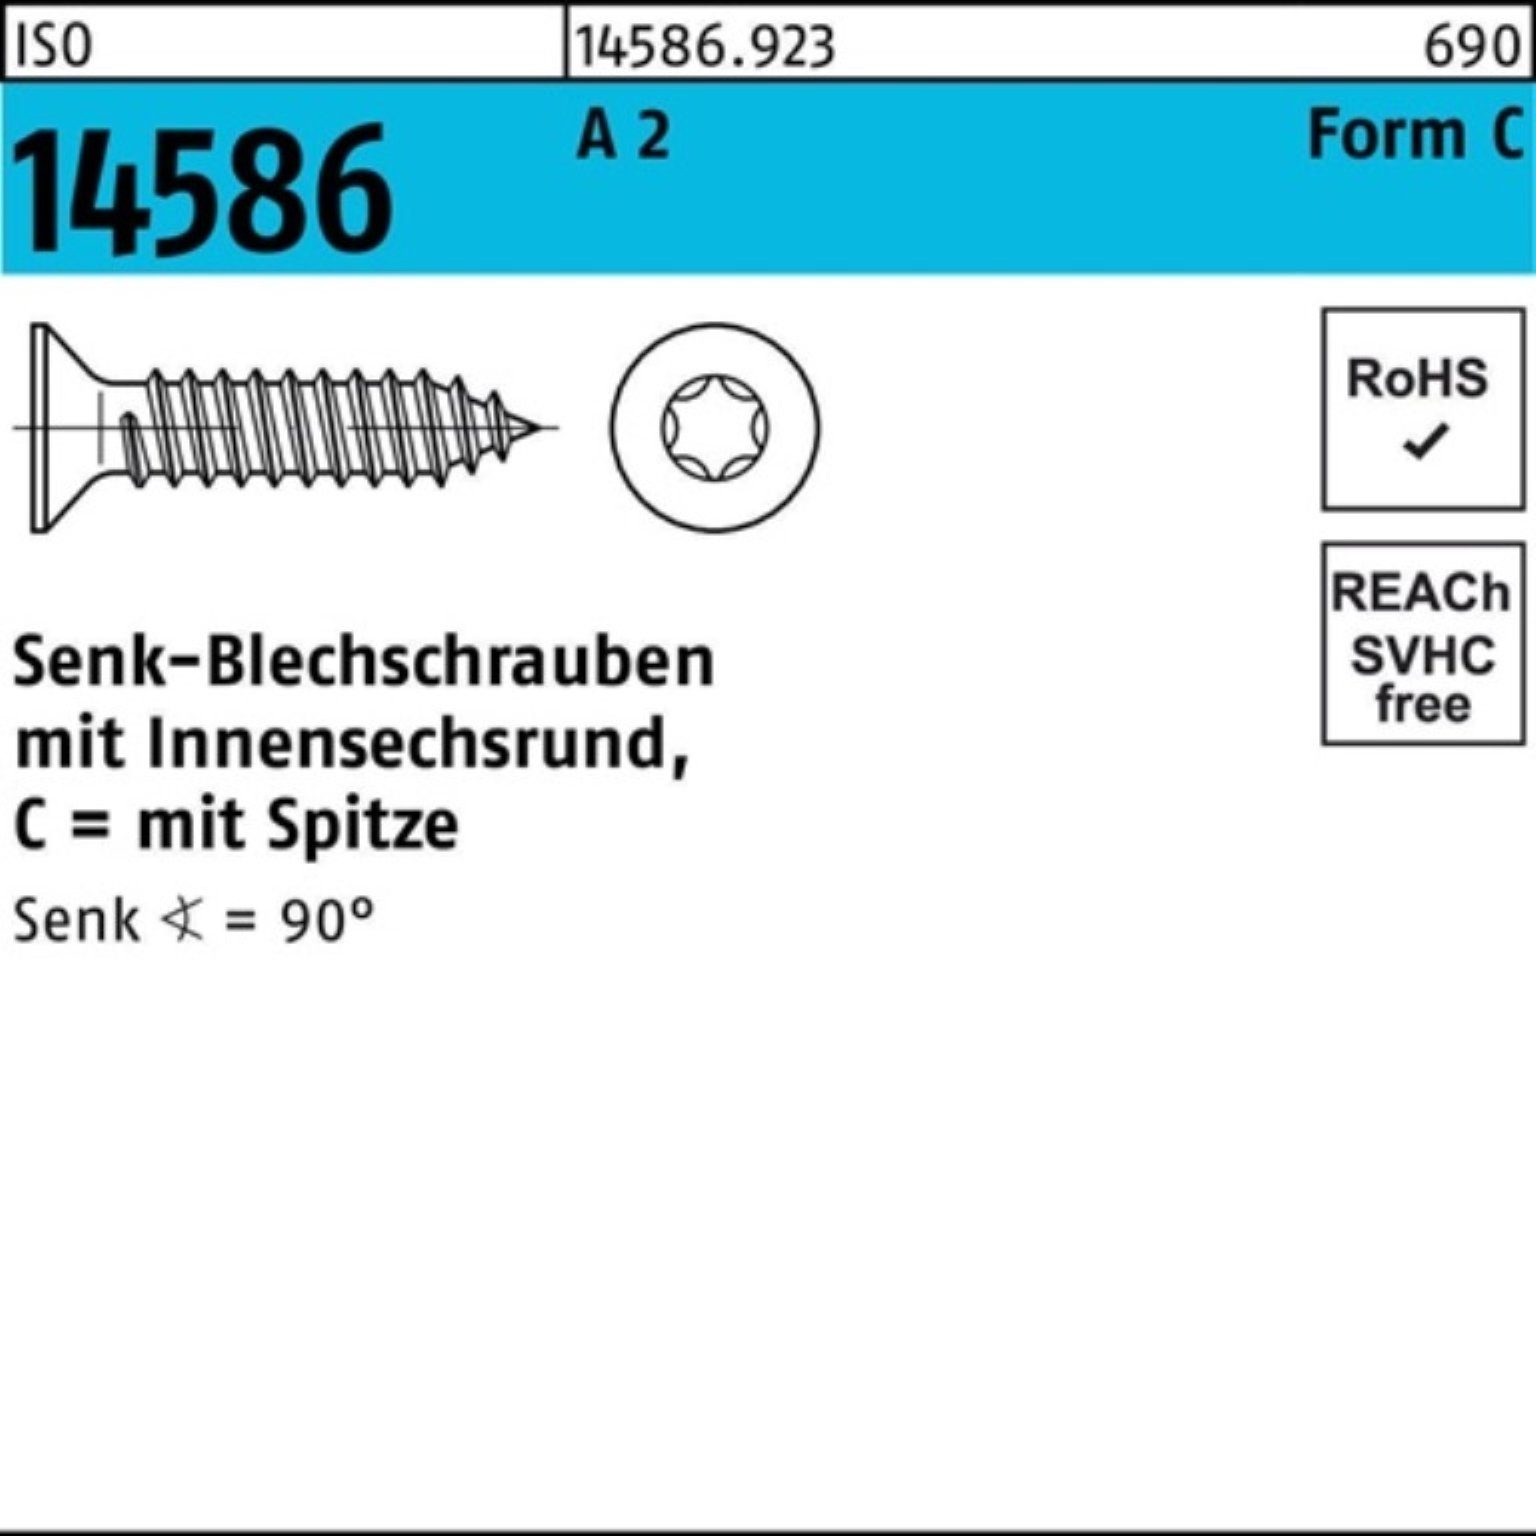 Reyher Schraube 500er Pack Senkblechschraube ISR/Spitze T15 -C 14586 A 32 3,9x 5 ISO 2